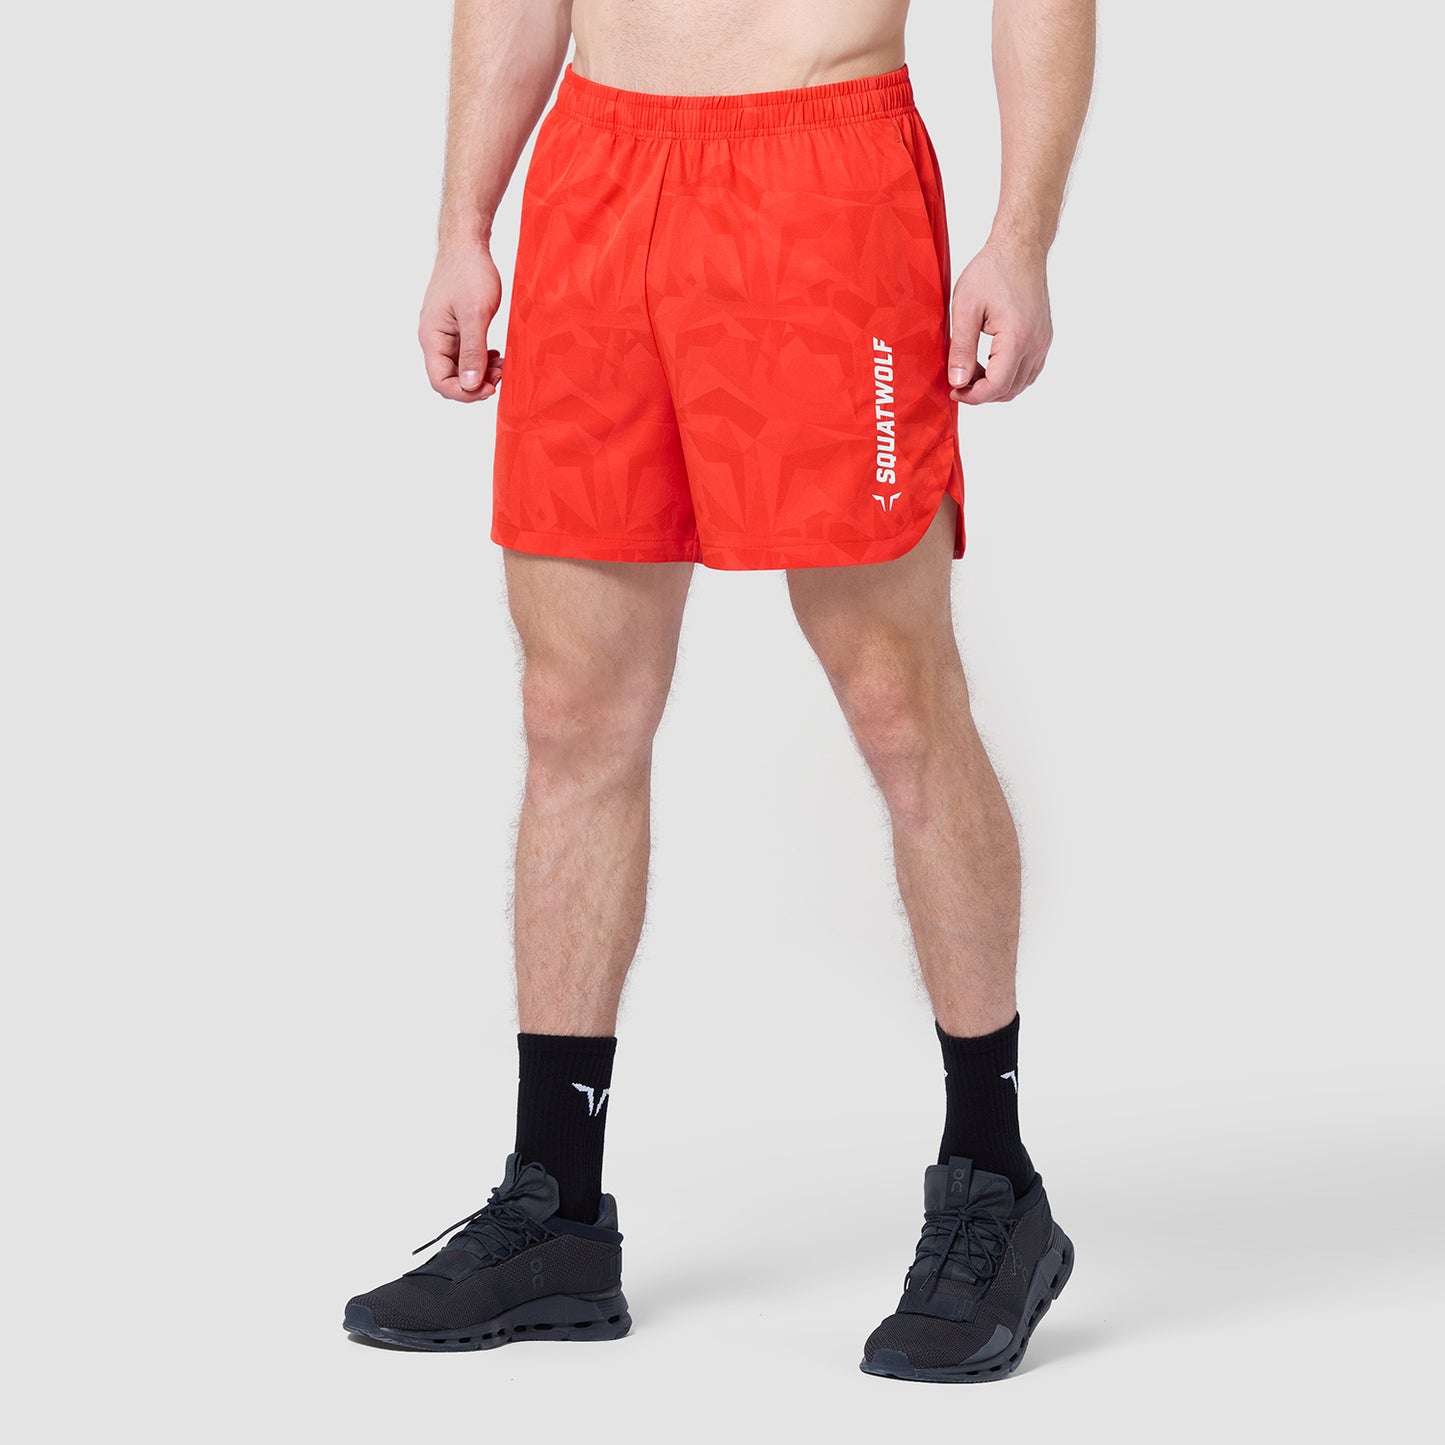 Warrior 5" Shorts 2.0 - Orange.Com Dot Camo